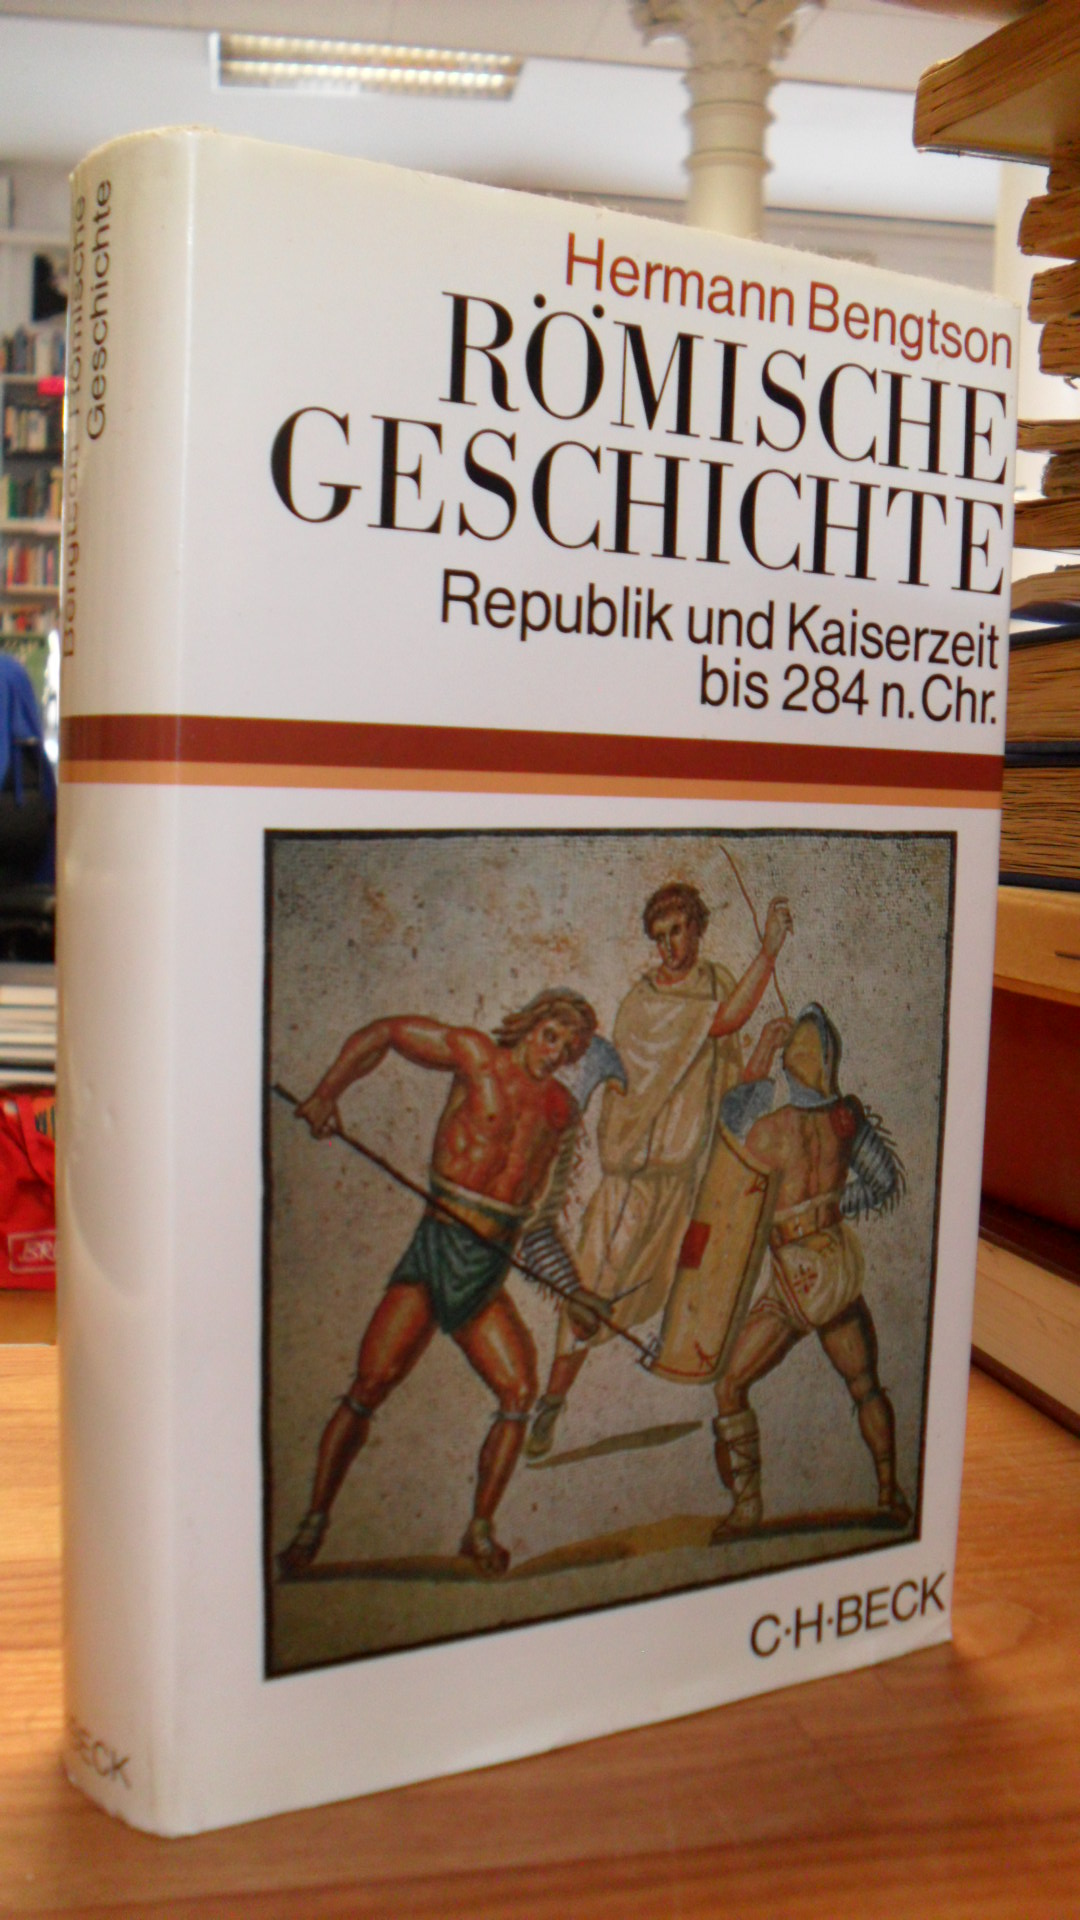 Bengtson, Römische Geschichte – Republik und Kaiserzeit bis 284 n. Chr,